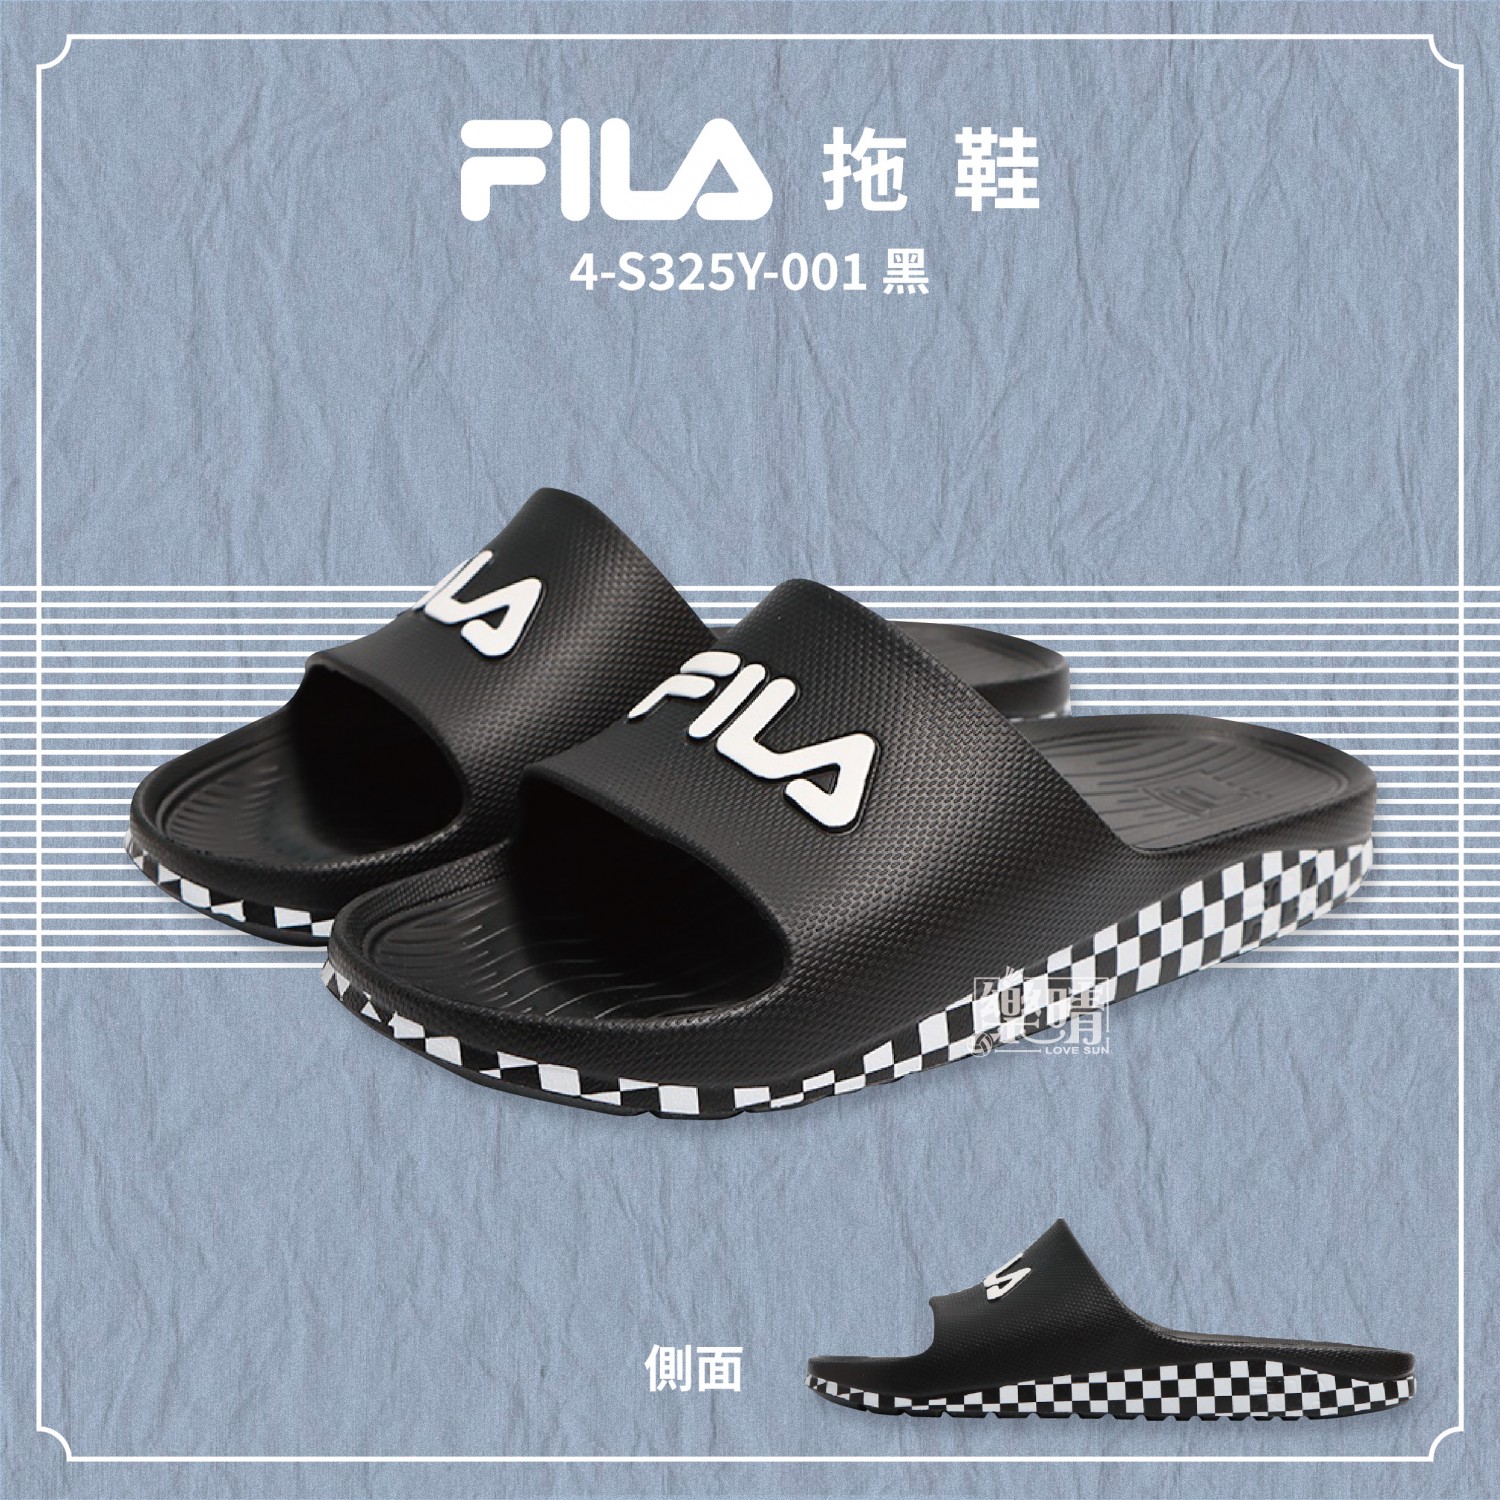 FILA 拖鞋 4-S325Y-001